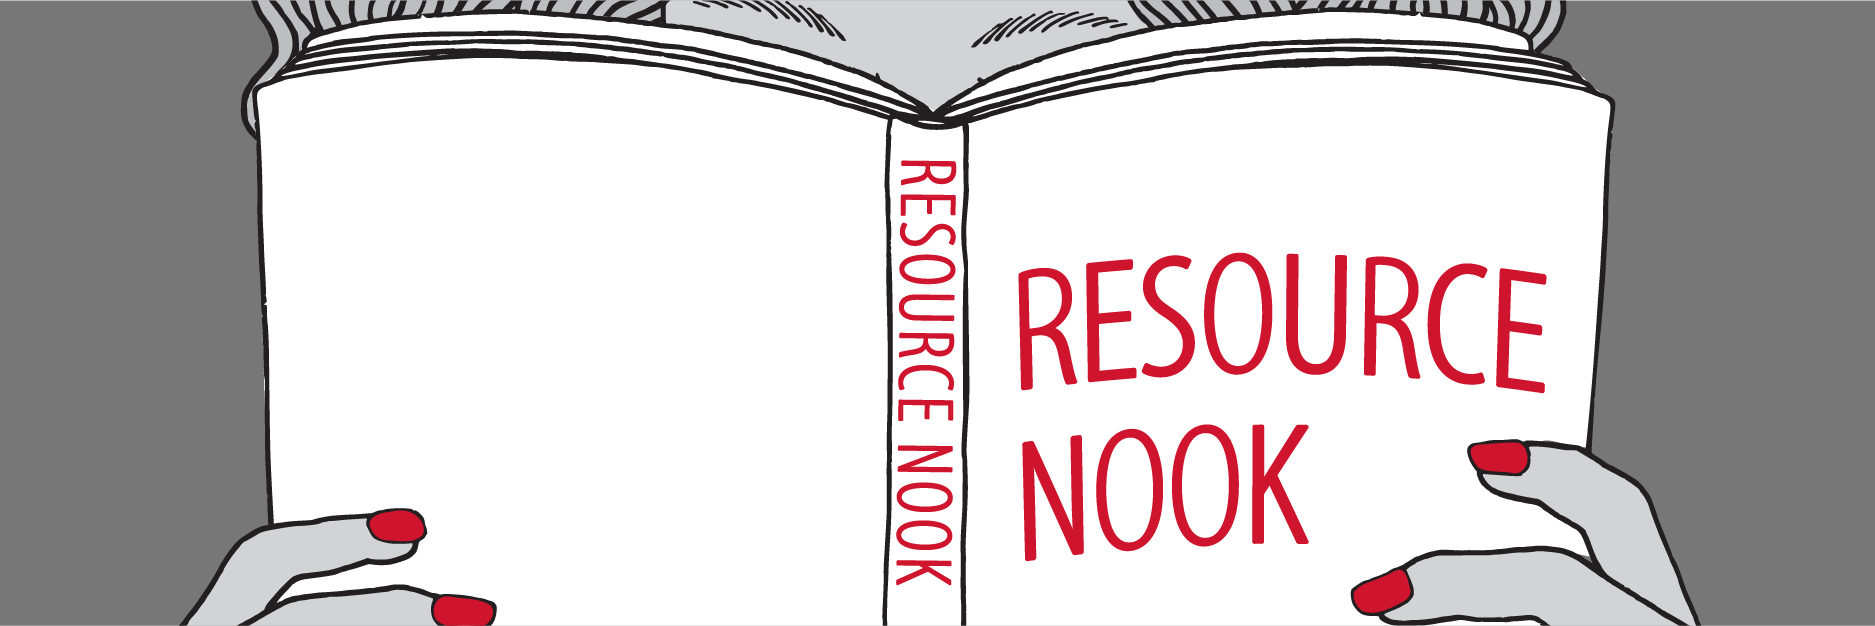 Resource Nook